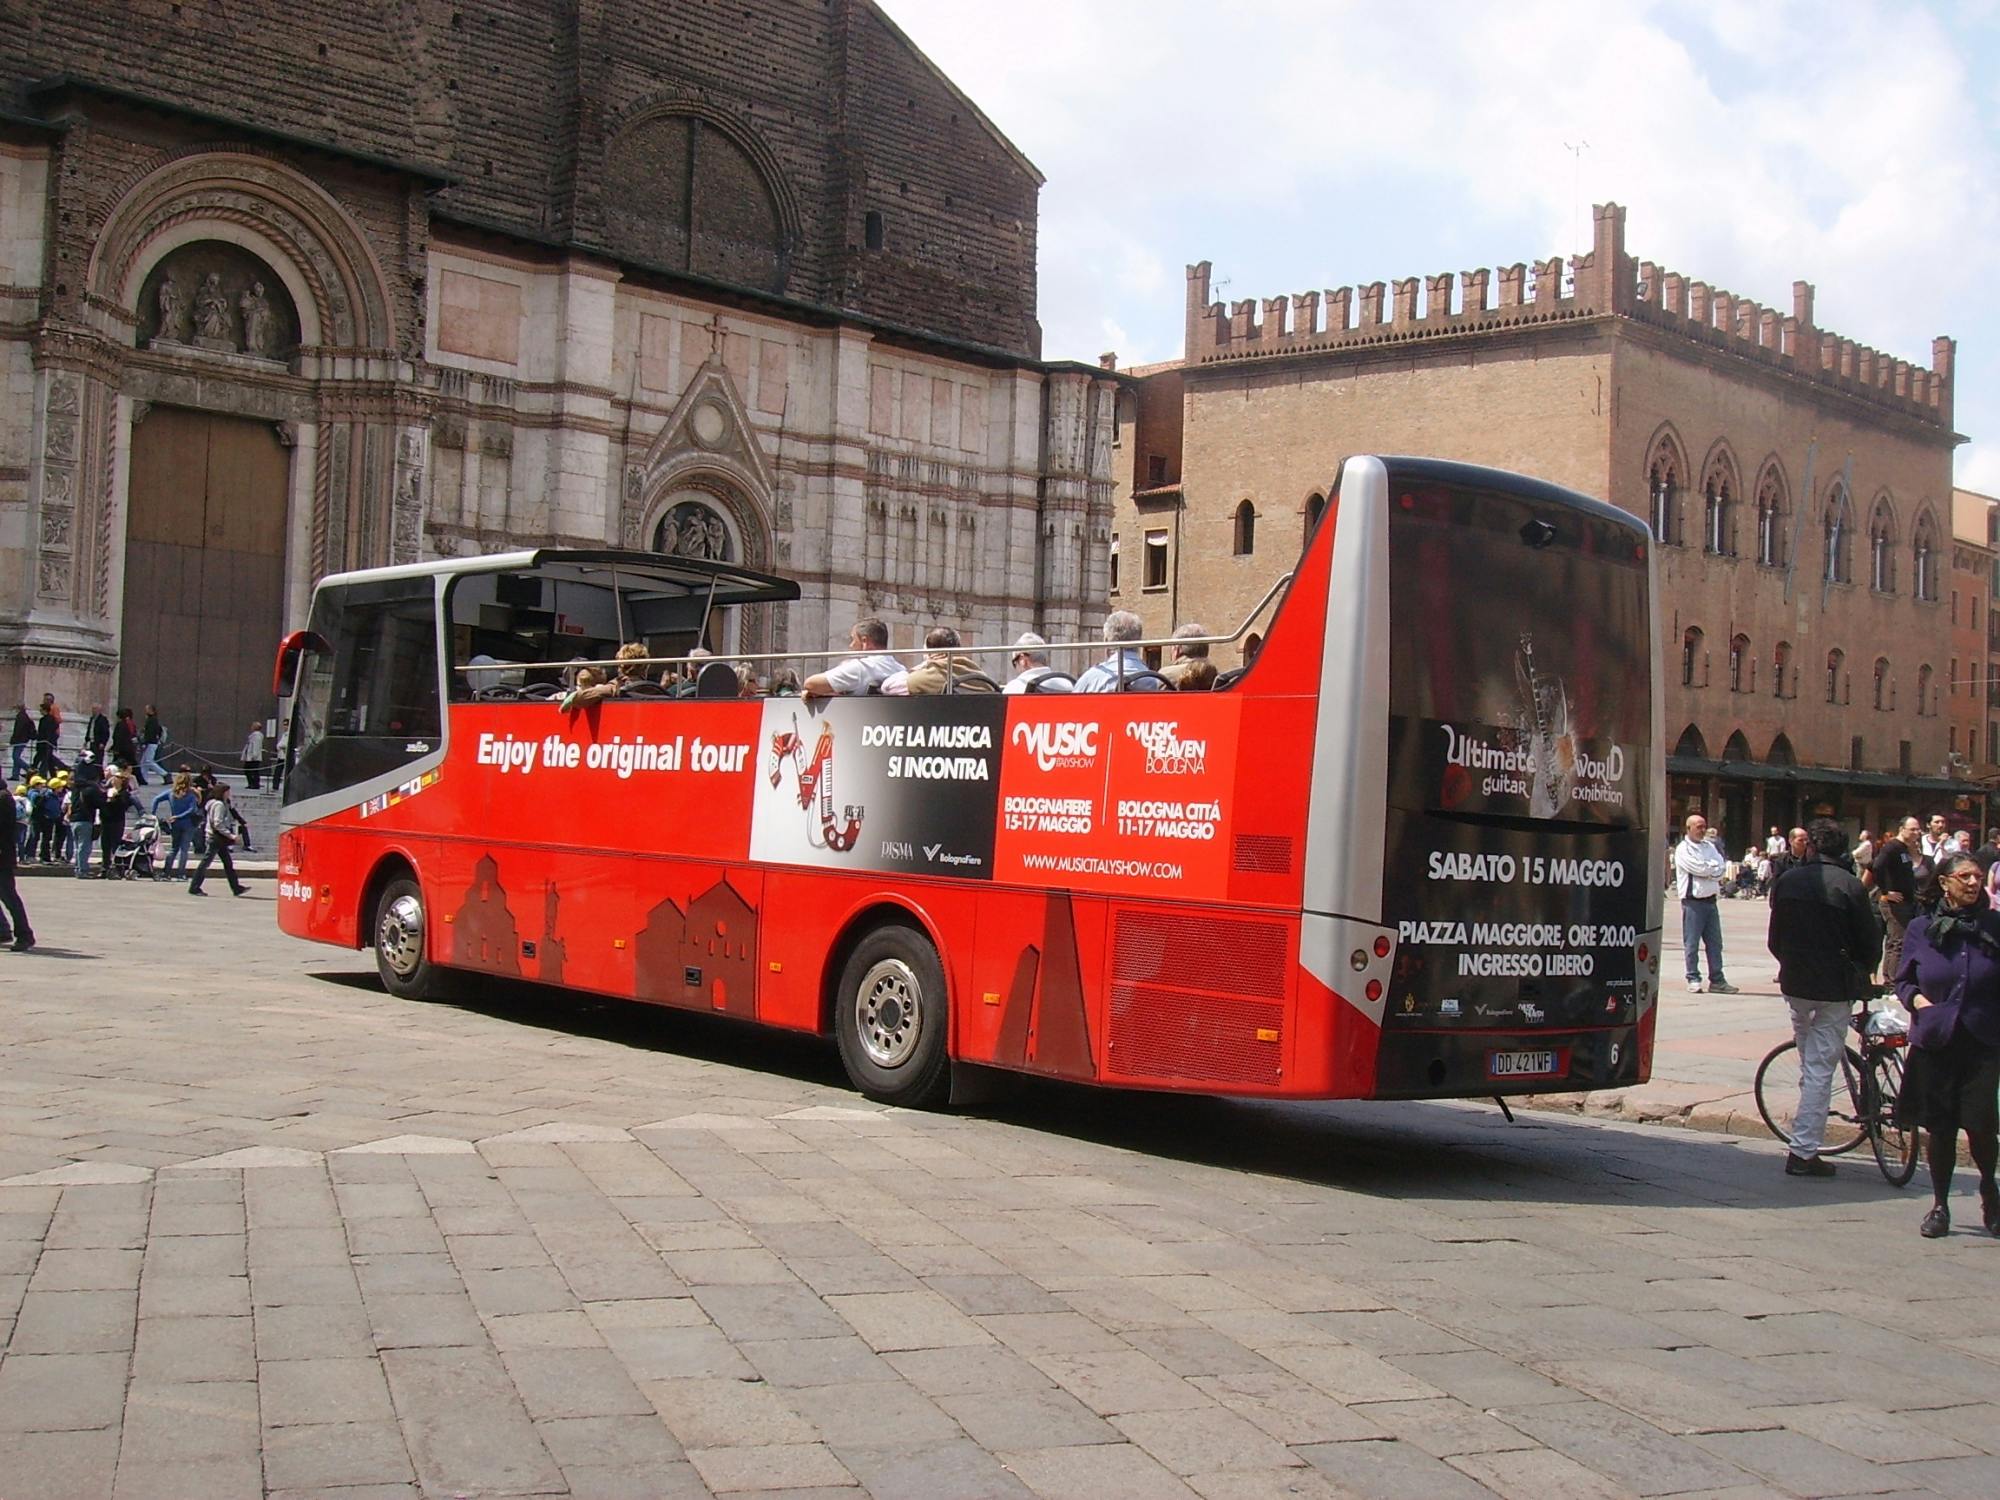 Wycieczka czerwonym autobusem do Bolonii i degustacja lokalnych produktów